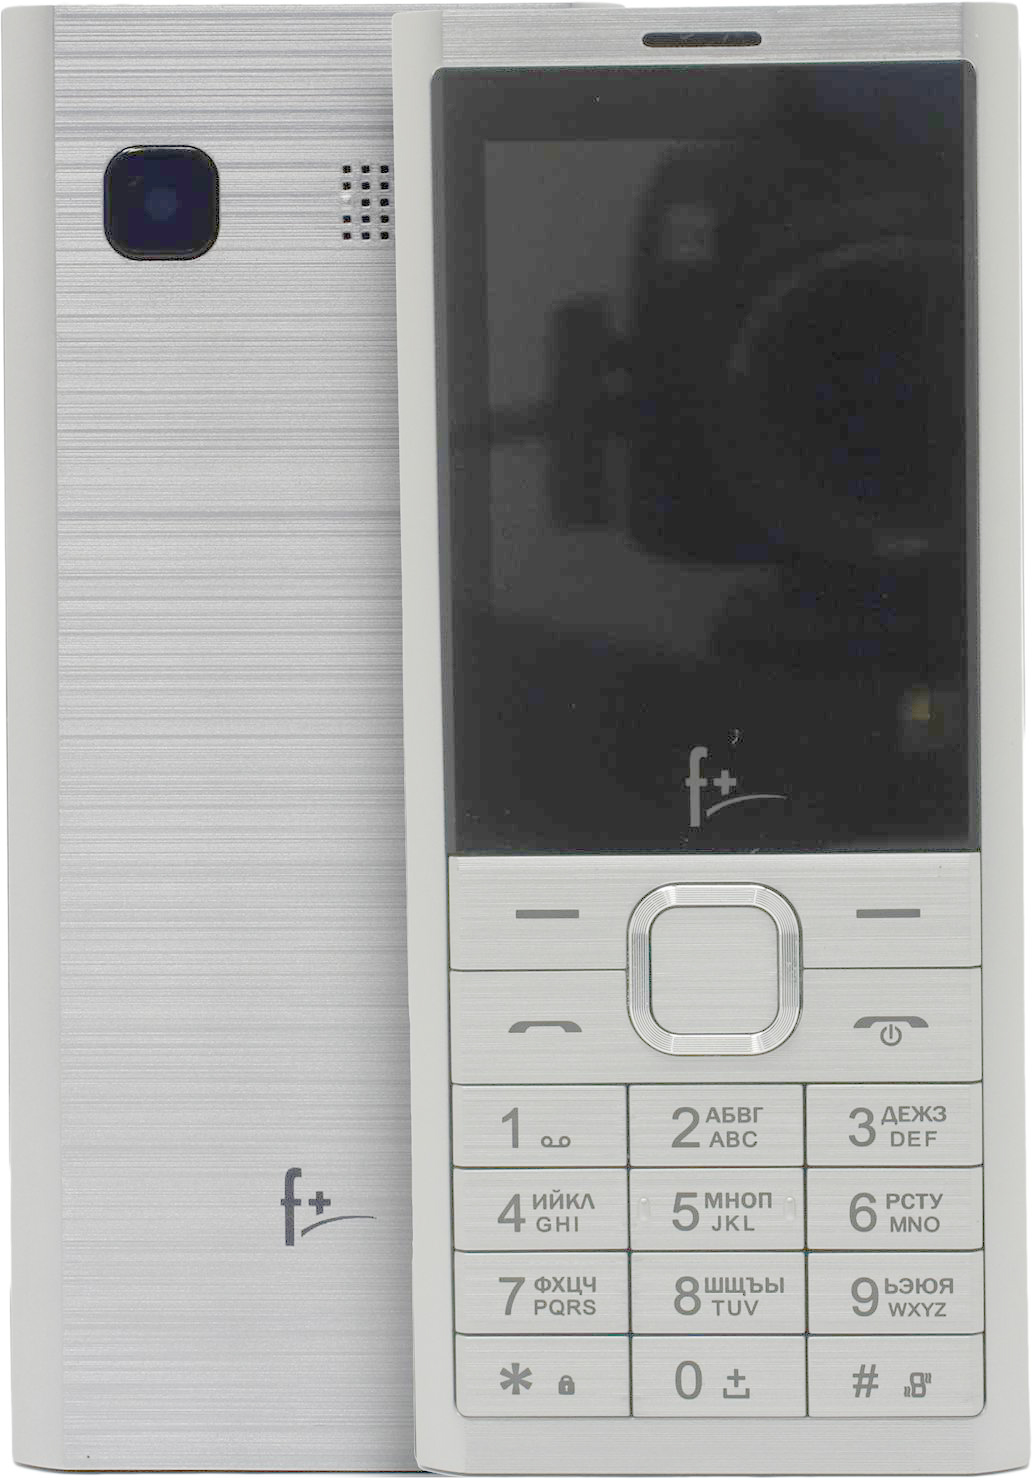 Мобильные телефон F+ B241 SILVER (2 SIM) мобильные телефон ezzy5 black